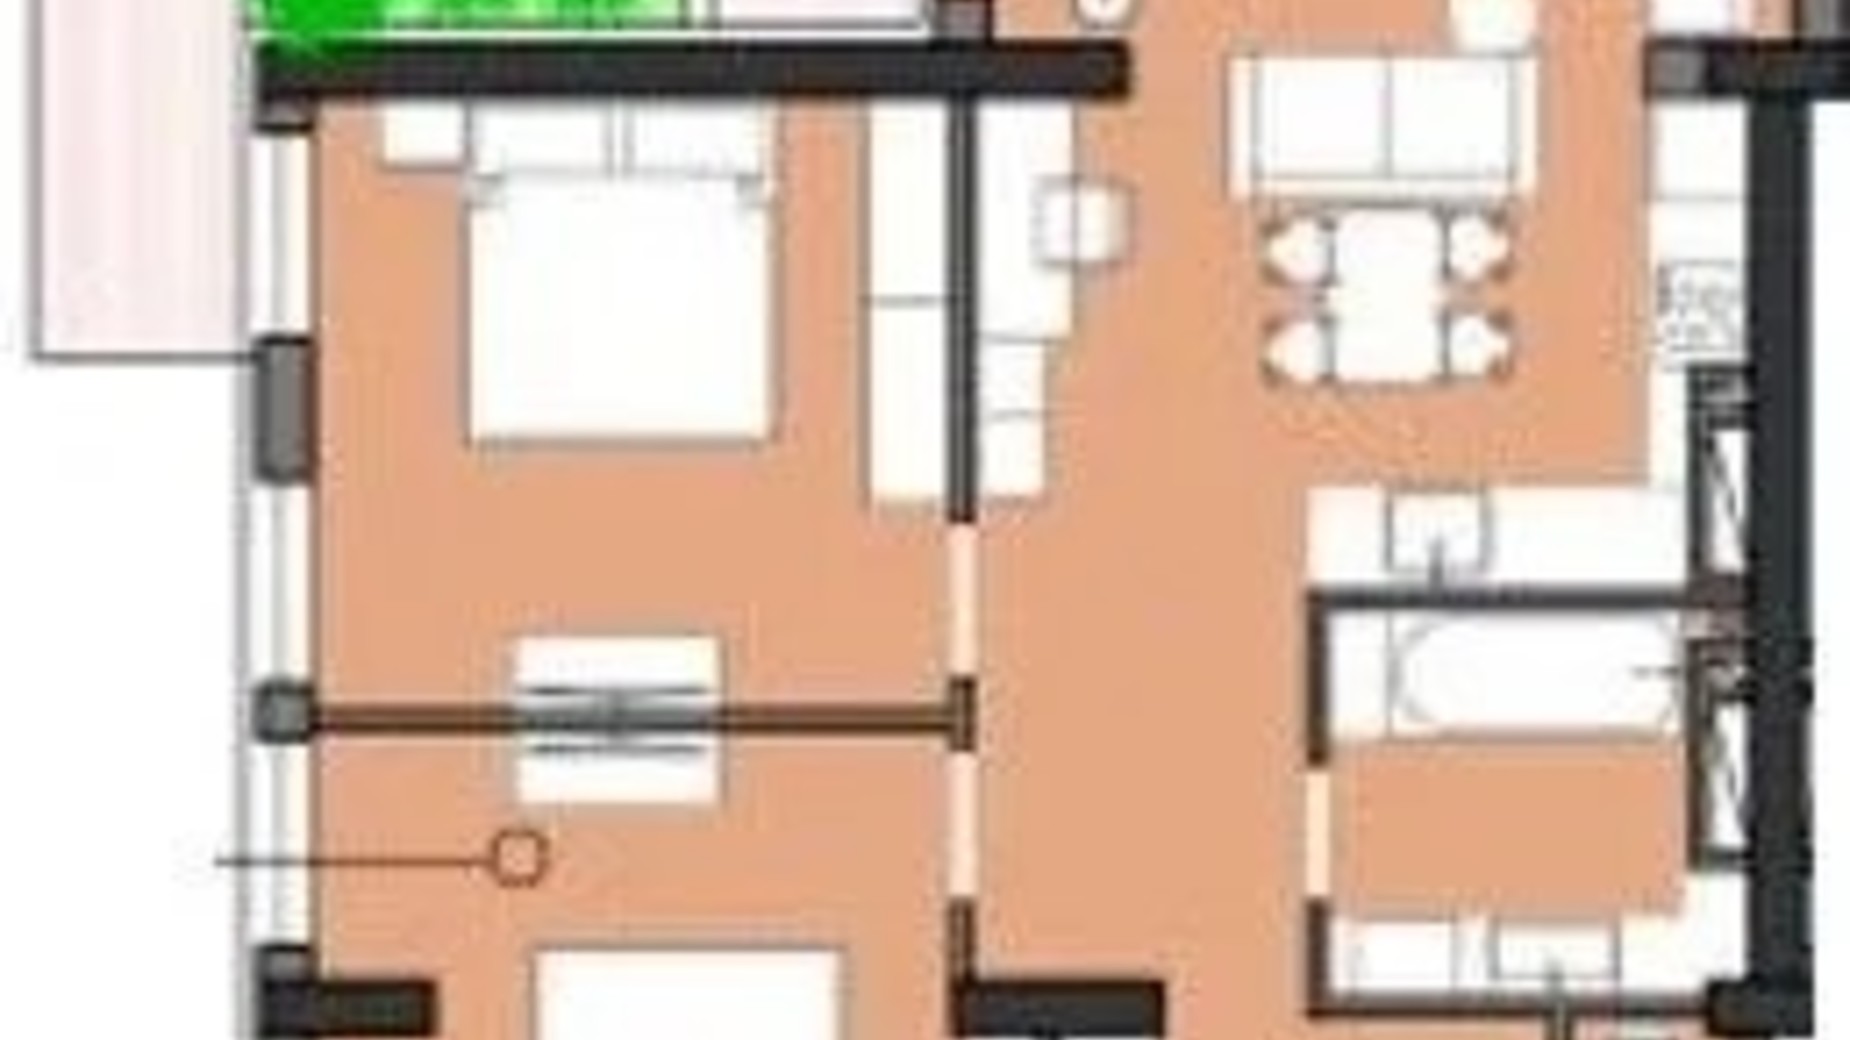 Планування 2-кімнатної квартири в ЖК Borgo Verde 64.6 м², фото 658135